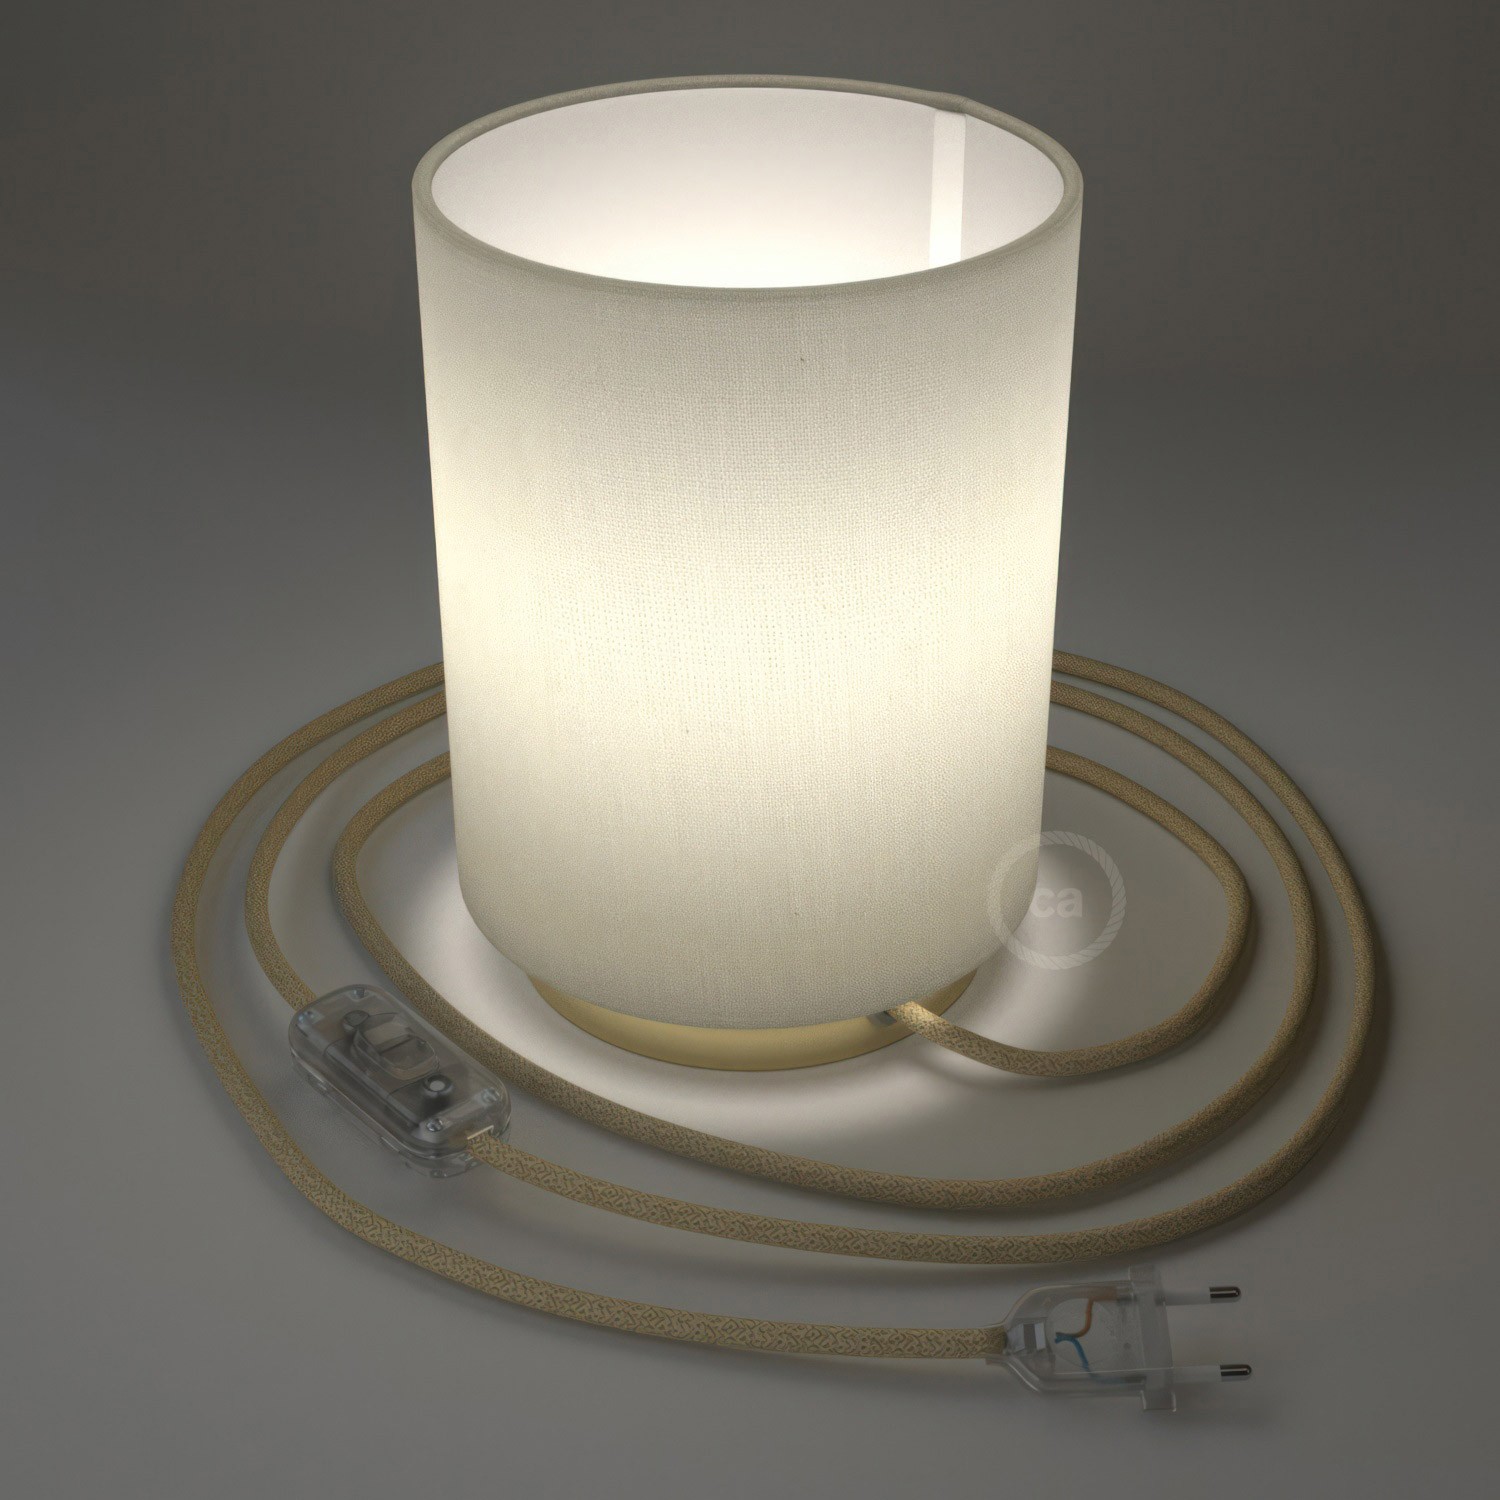 Posaluce aus Metall mit Lampenschirm Cilindro Linone Weiß, komplett mit Textilkabel, Schalter und 2-poligem Stecker